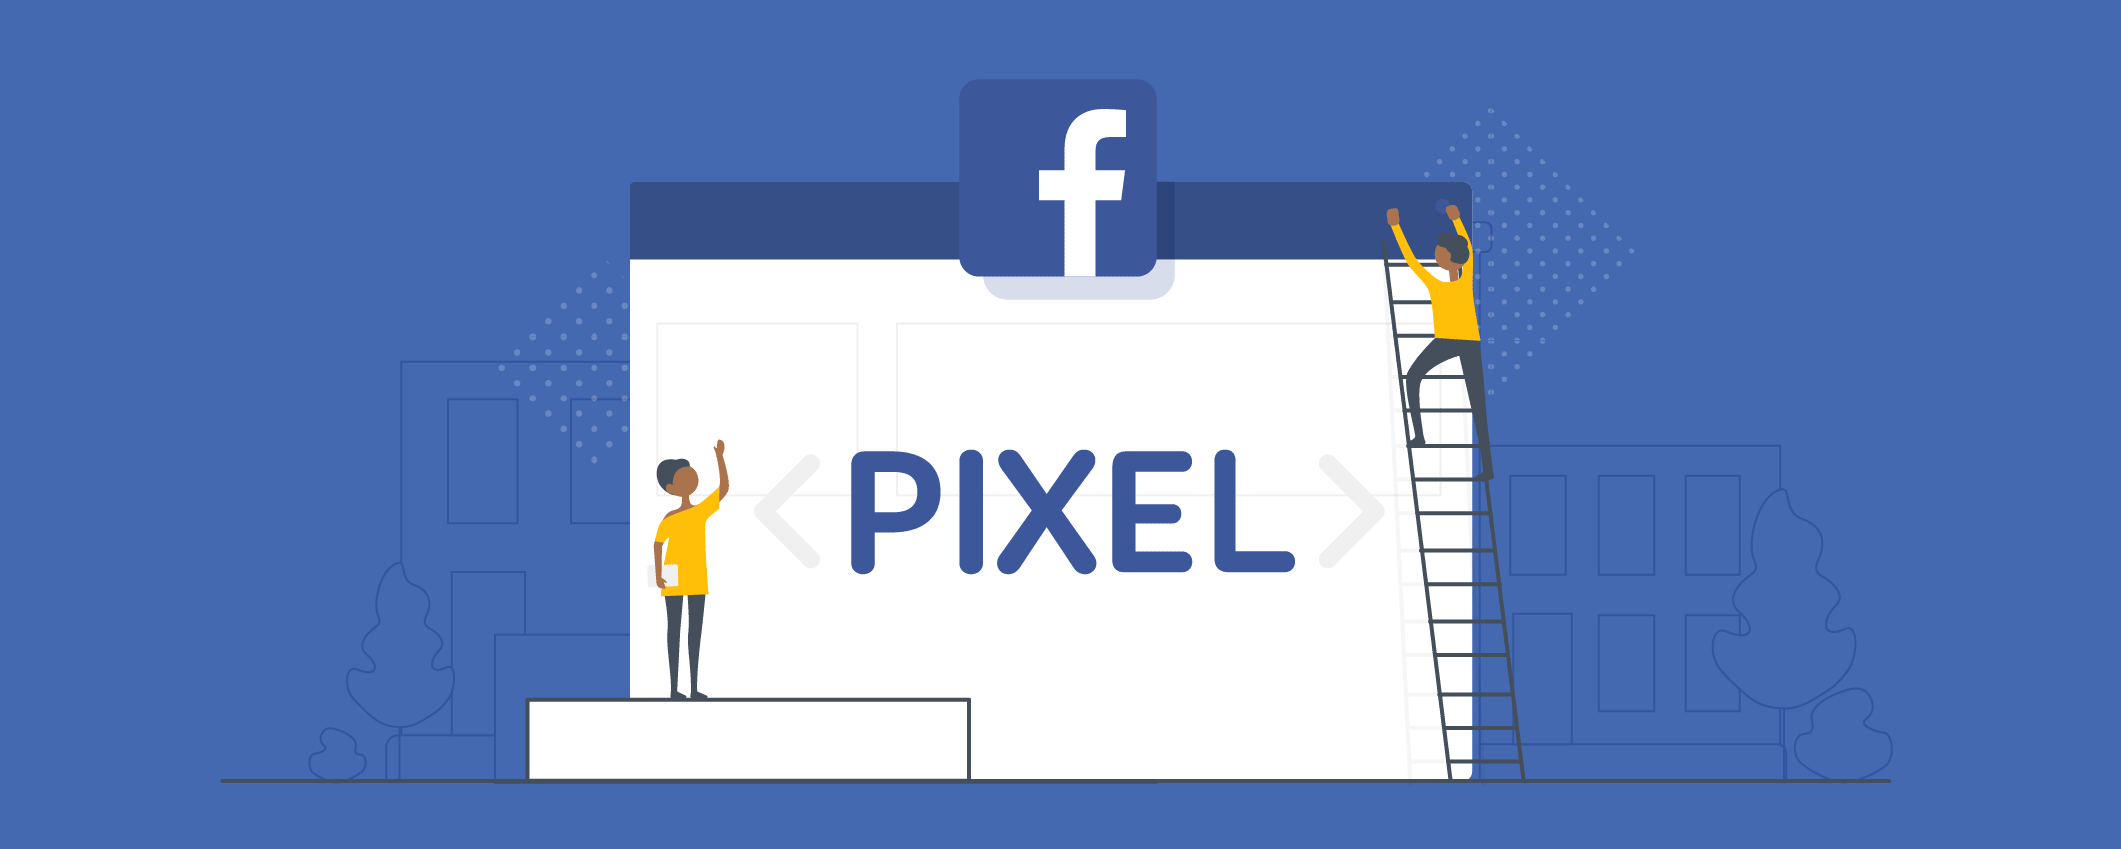 Facebook Pixel hướng dẫn cài đặt và cách sử dụng